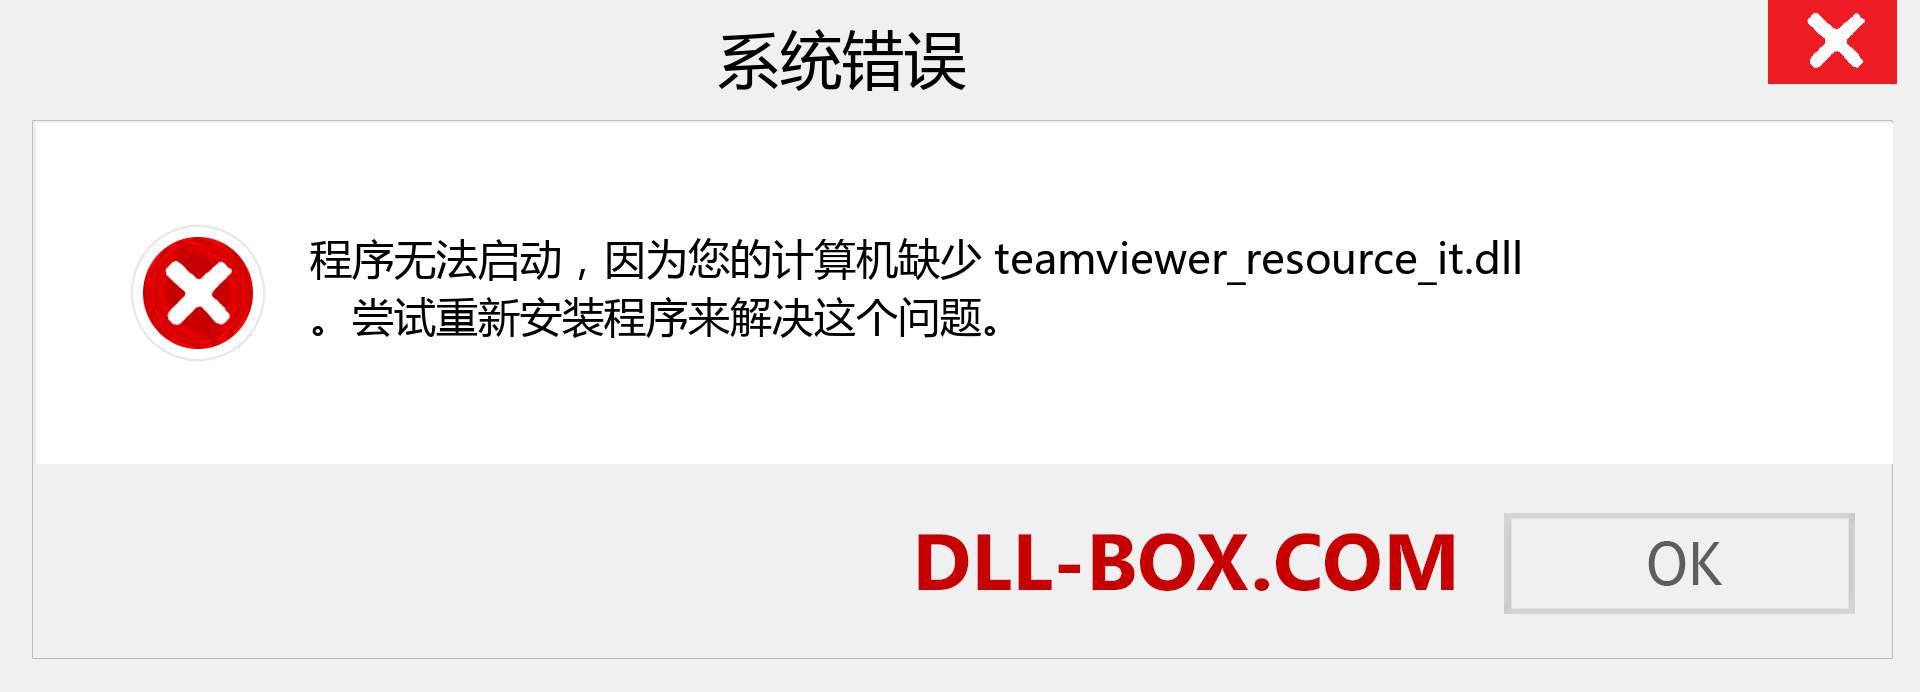 teamviewer_resource_it.dll 文件丢失？。 适用于 Windows 7、8、10 的下载 - 修复 Windows、照片、图像上的 teamviewer_resource_it dll 丢失错误